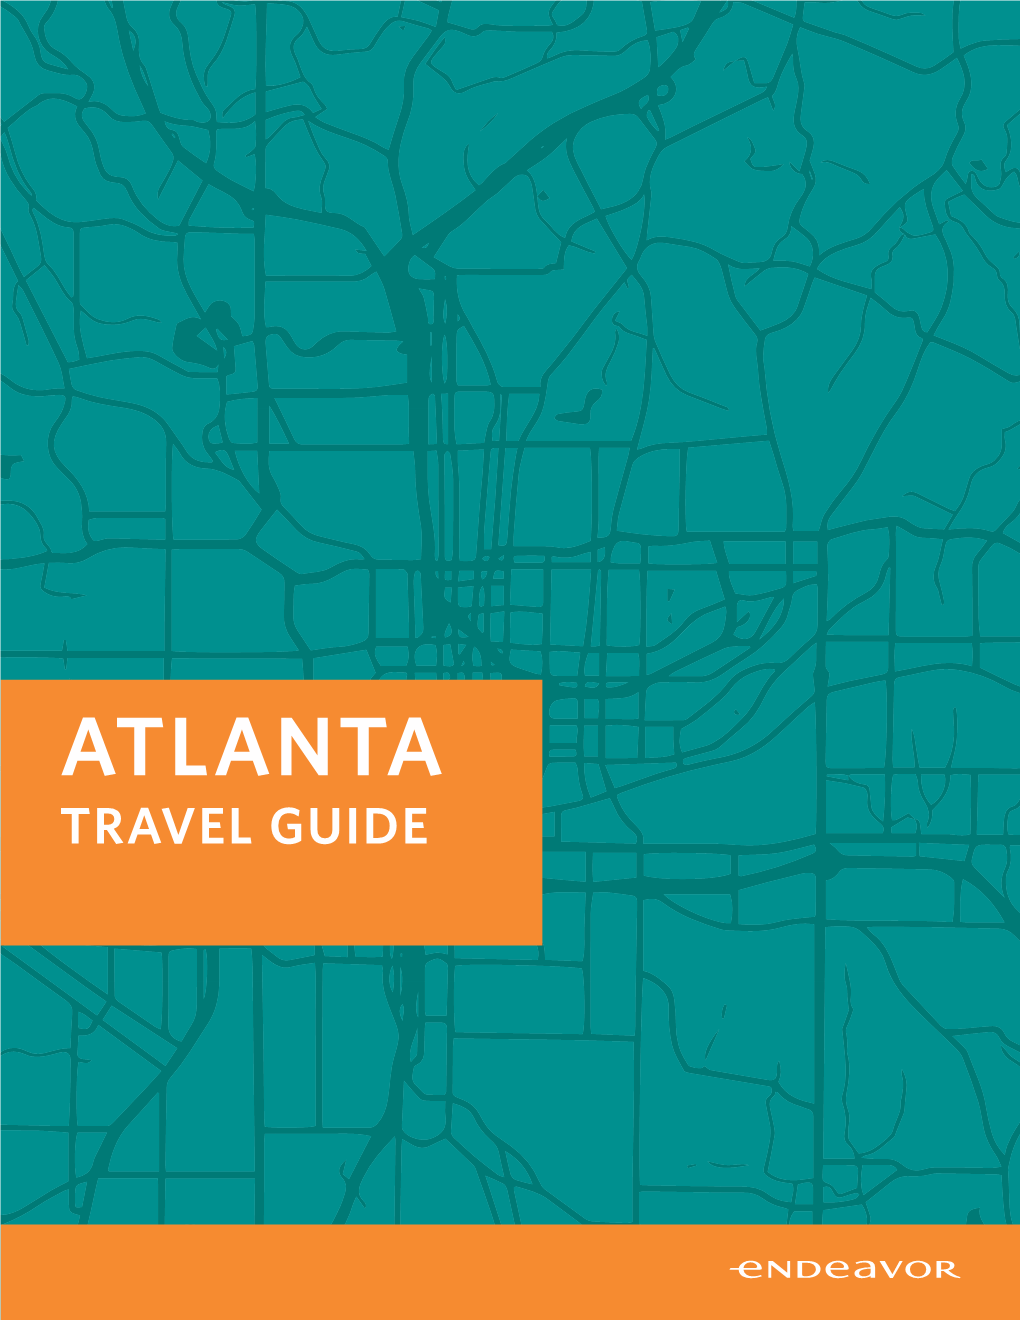 Atlanta Atlantatravel Guide Travel Guide Things to Remember